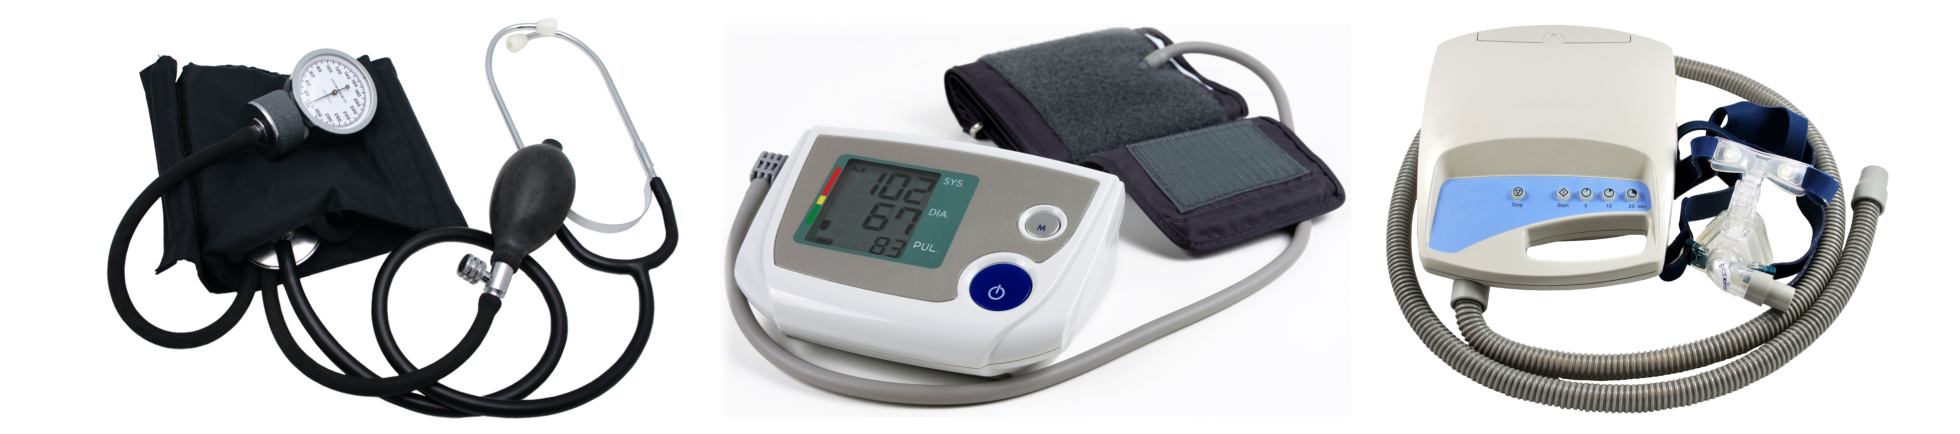 Blood pressure cuff, blood pressure monitor, and CPAP machine